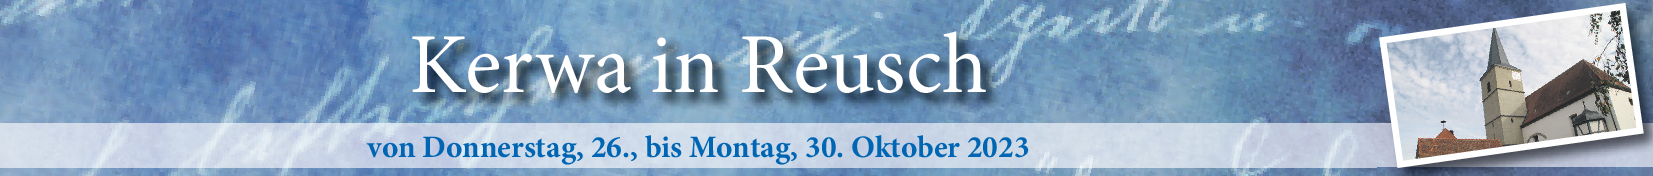 Kerwa in Reusch vom 26. bis 30. Oktober: Highlights sind der Gottesdienst und der Umzug